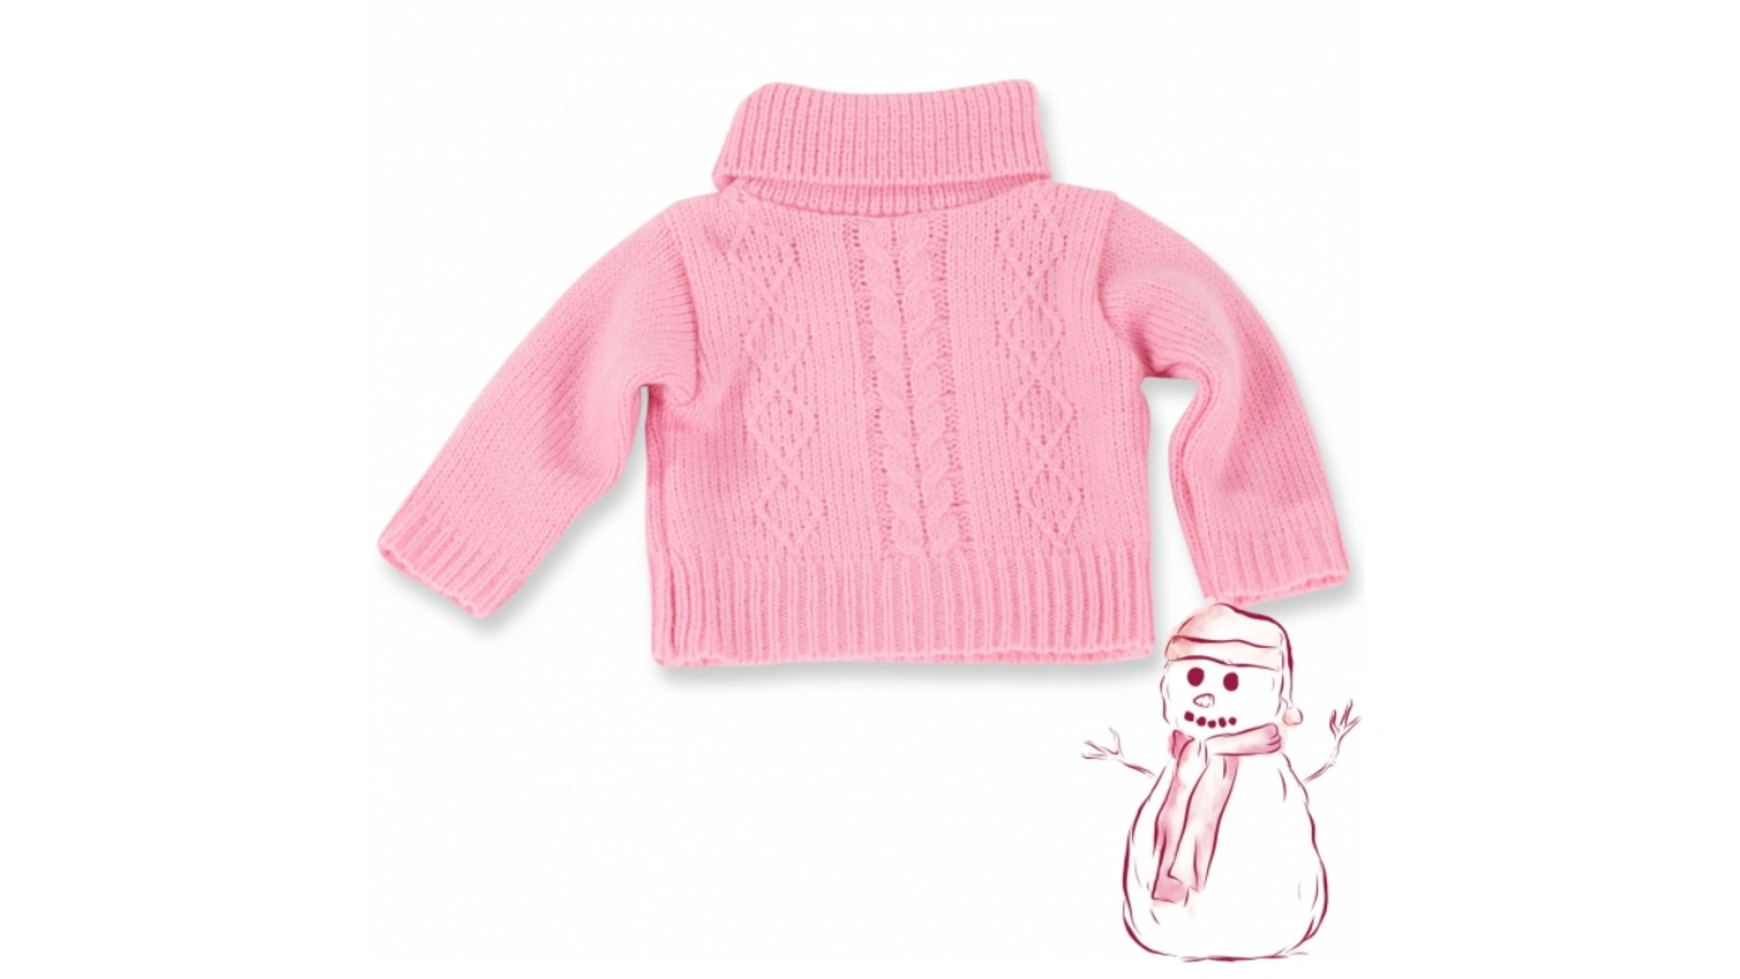 Размер косичек свитера м/л/хl Götz Puppenmanufaktur свитер размер onesize 42 48 розовый